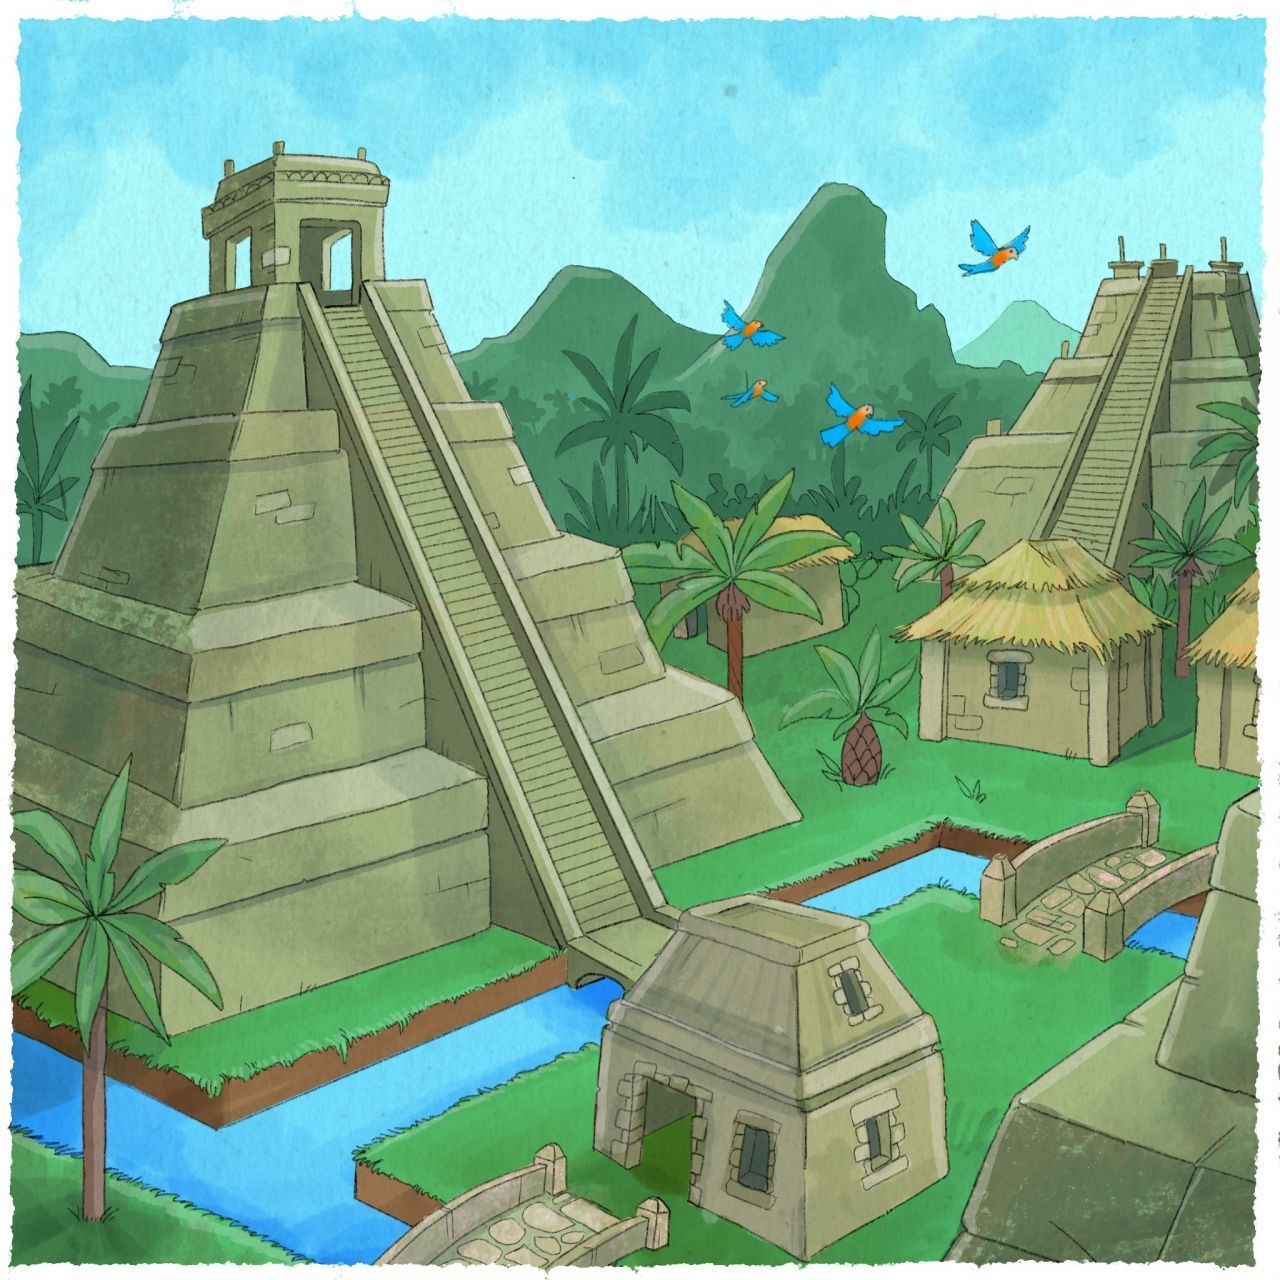 Die Azteken bauten riesige Städte mit Wehranlagen, Bewässerungs-Systemen, Palästen und Tempeln aus Stein. Dafür legten sie auch Sümpfe trocken. Die Hauptstadt Tenochtitlan soll um das Jahr 1500 gut 250.000 Bewohner beherbergt haben. Einfache Wohnhäuser bestanden aus Holz oder Lehm. Teilweise wurden Kanäle per Boot befahren, aber auch Staudämme gebaut, auf denen Straßen verliefen.